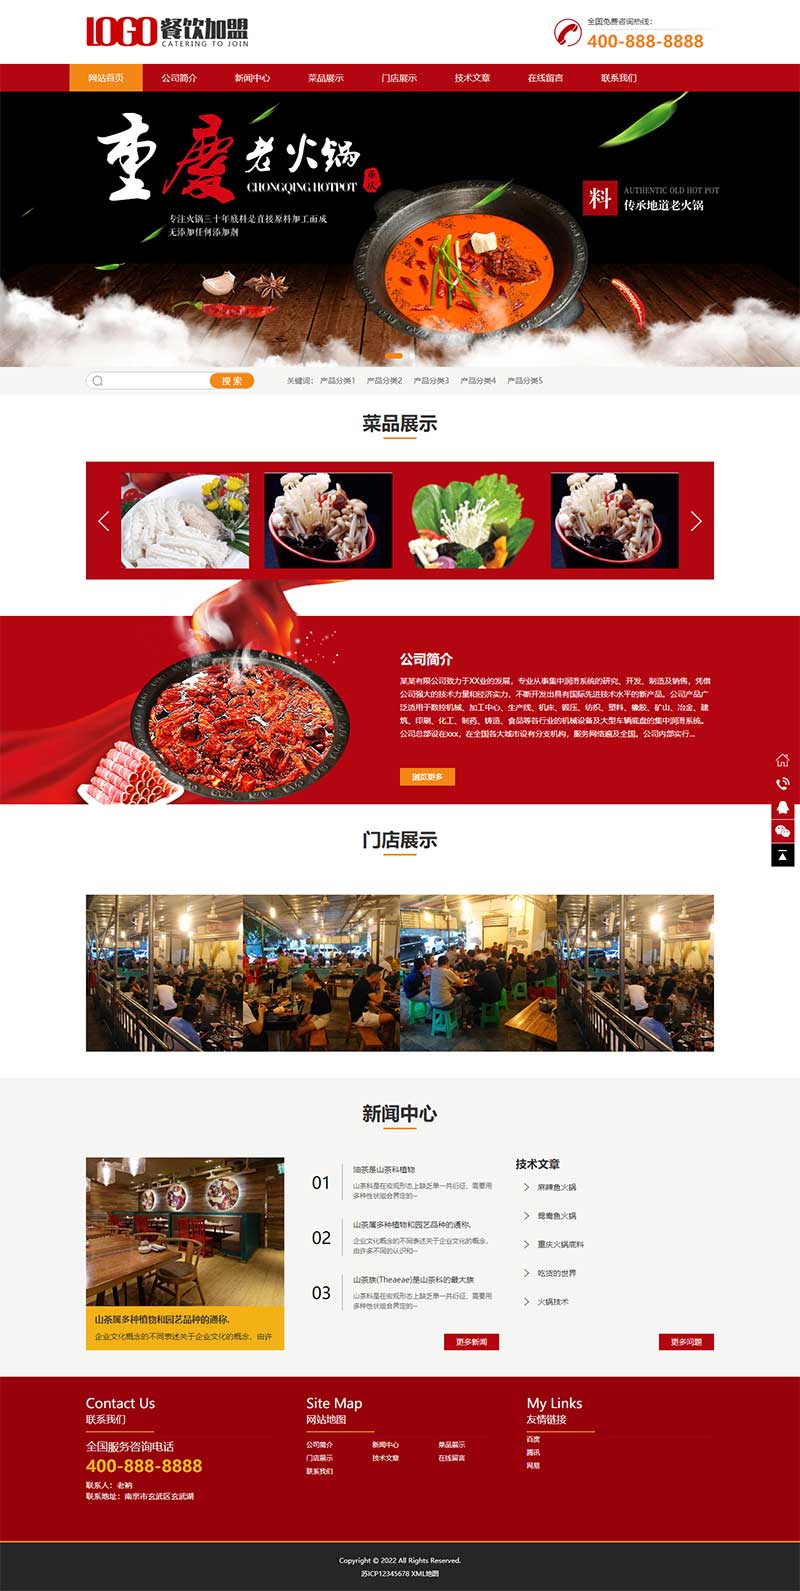 (PC+手机版)餐饮服务行业火锅店招商加盟网站源码电脑端展示图片